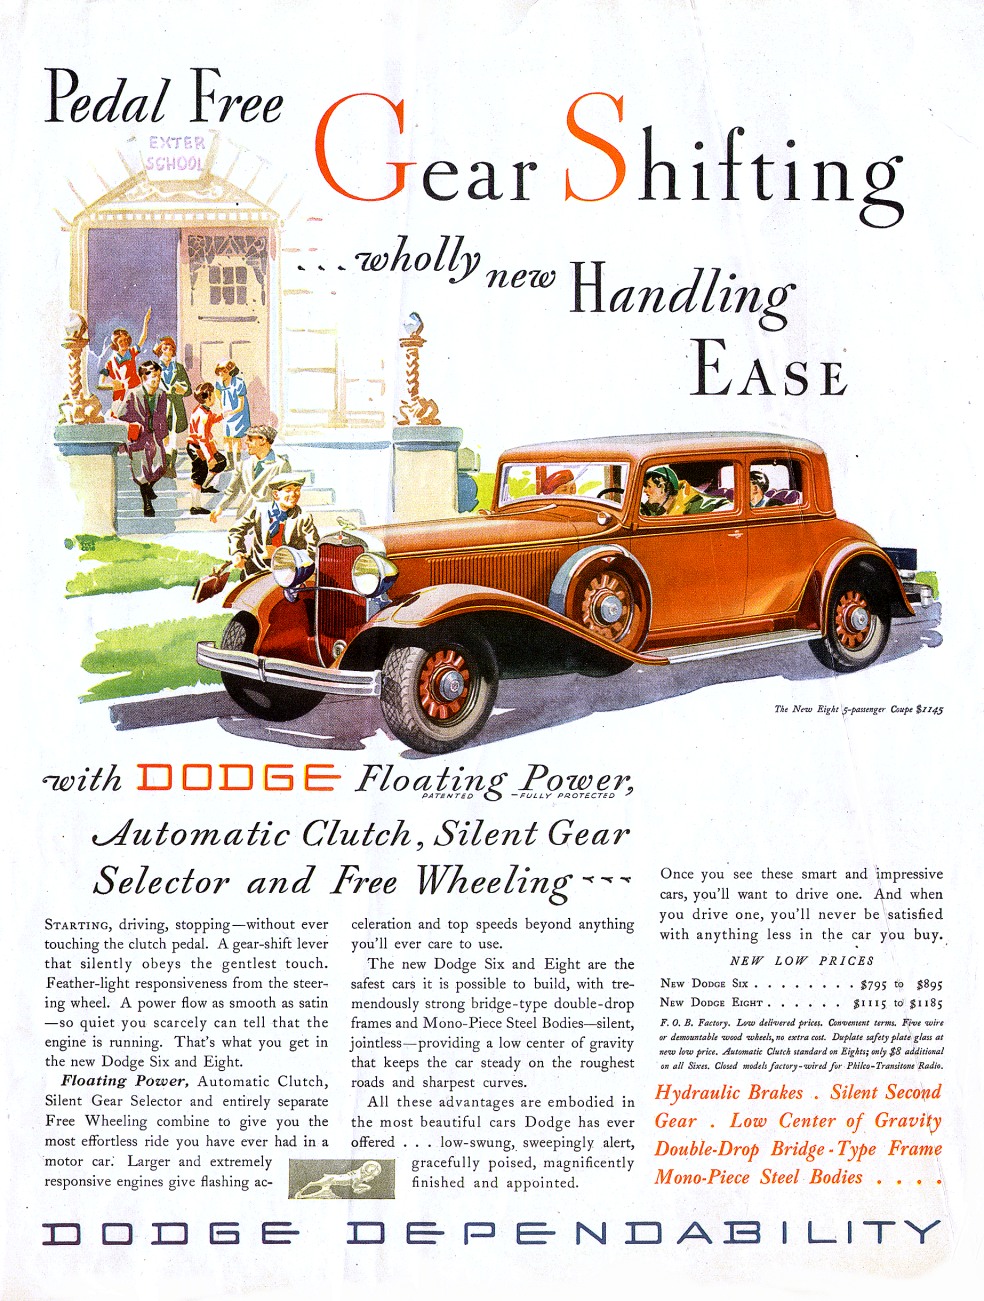 1932 Dodge Auto Advertising